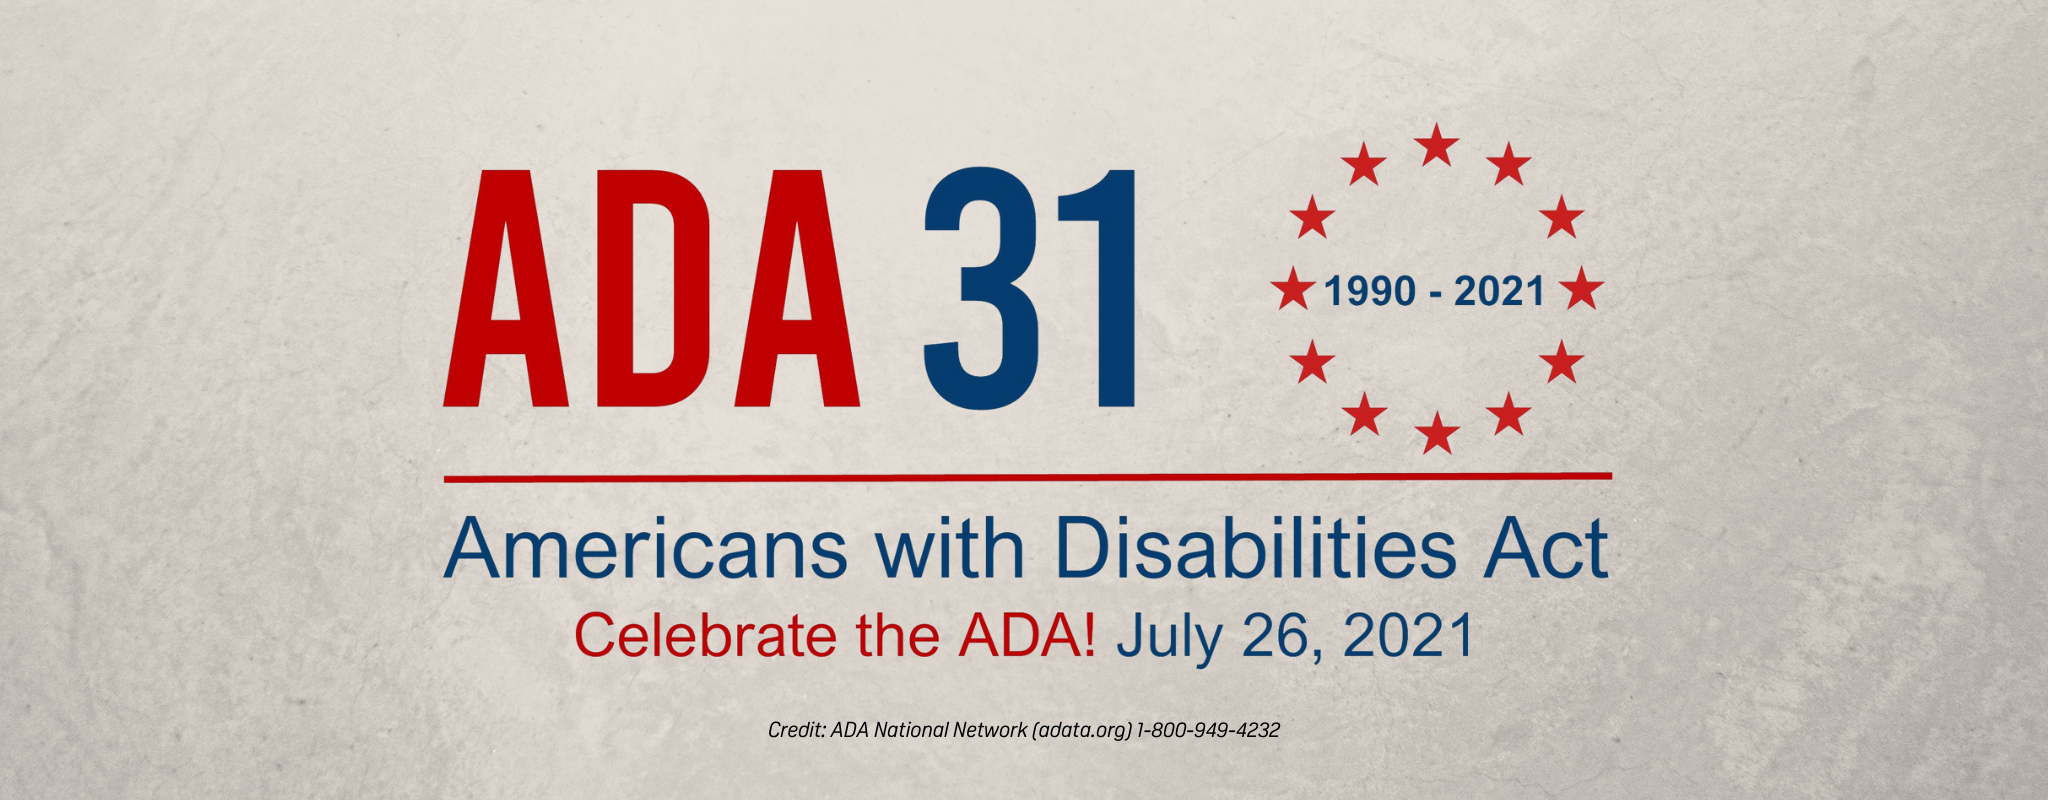 Bannière grise avec logo Americans with Disabilities Act 31